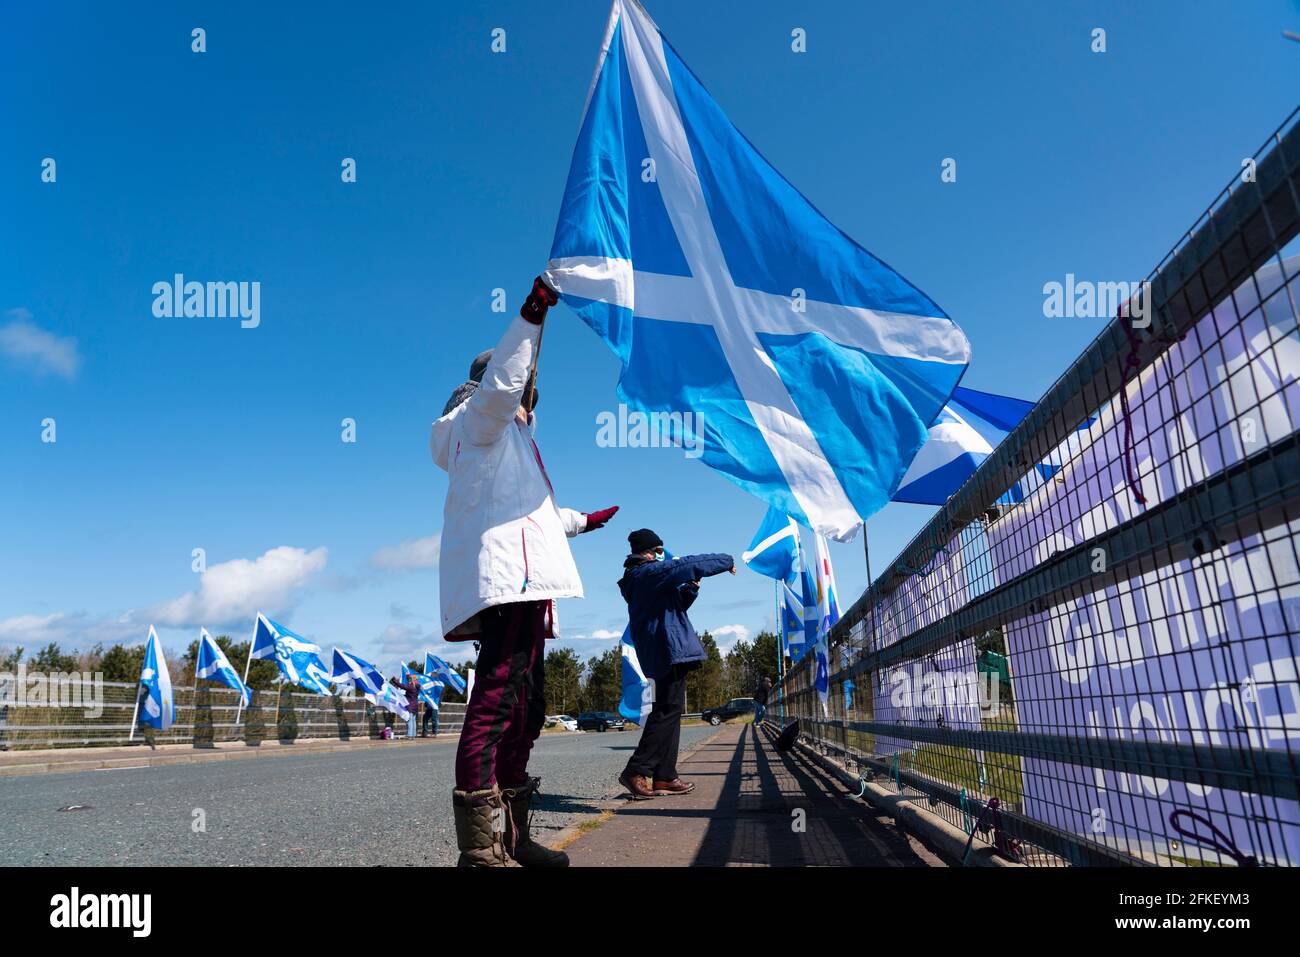 Lamberton, frontiere scozzesi, Scozia, Regno Unito. 1 maggio 2021. I sostenitori della Pro Scottish Independence attaccano bandiere e cartelli ai ponti che attraversano l'autostrada A1 e ondano oggi agli automobilisti che passano. Iain Masterton/Alamy Live News Foto Stock